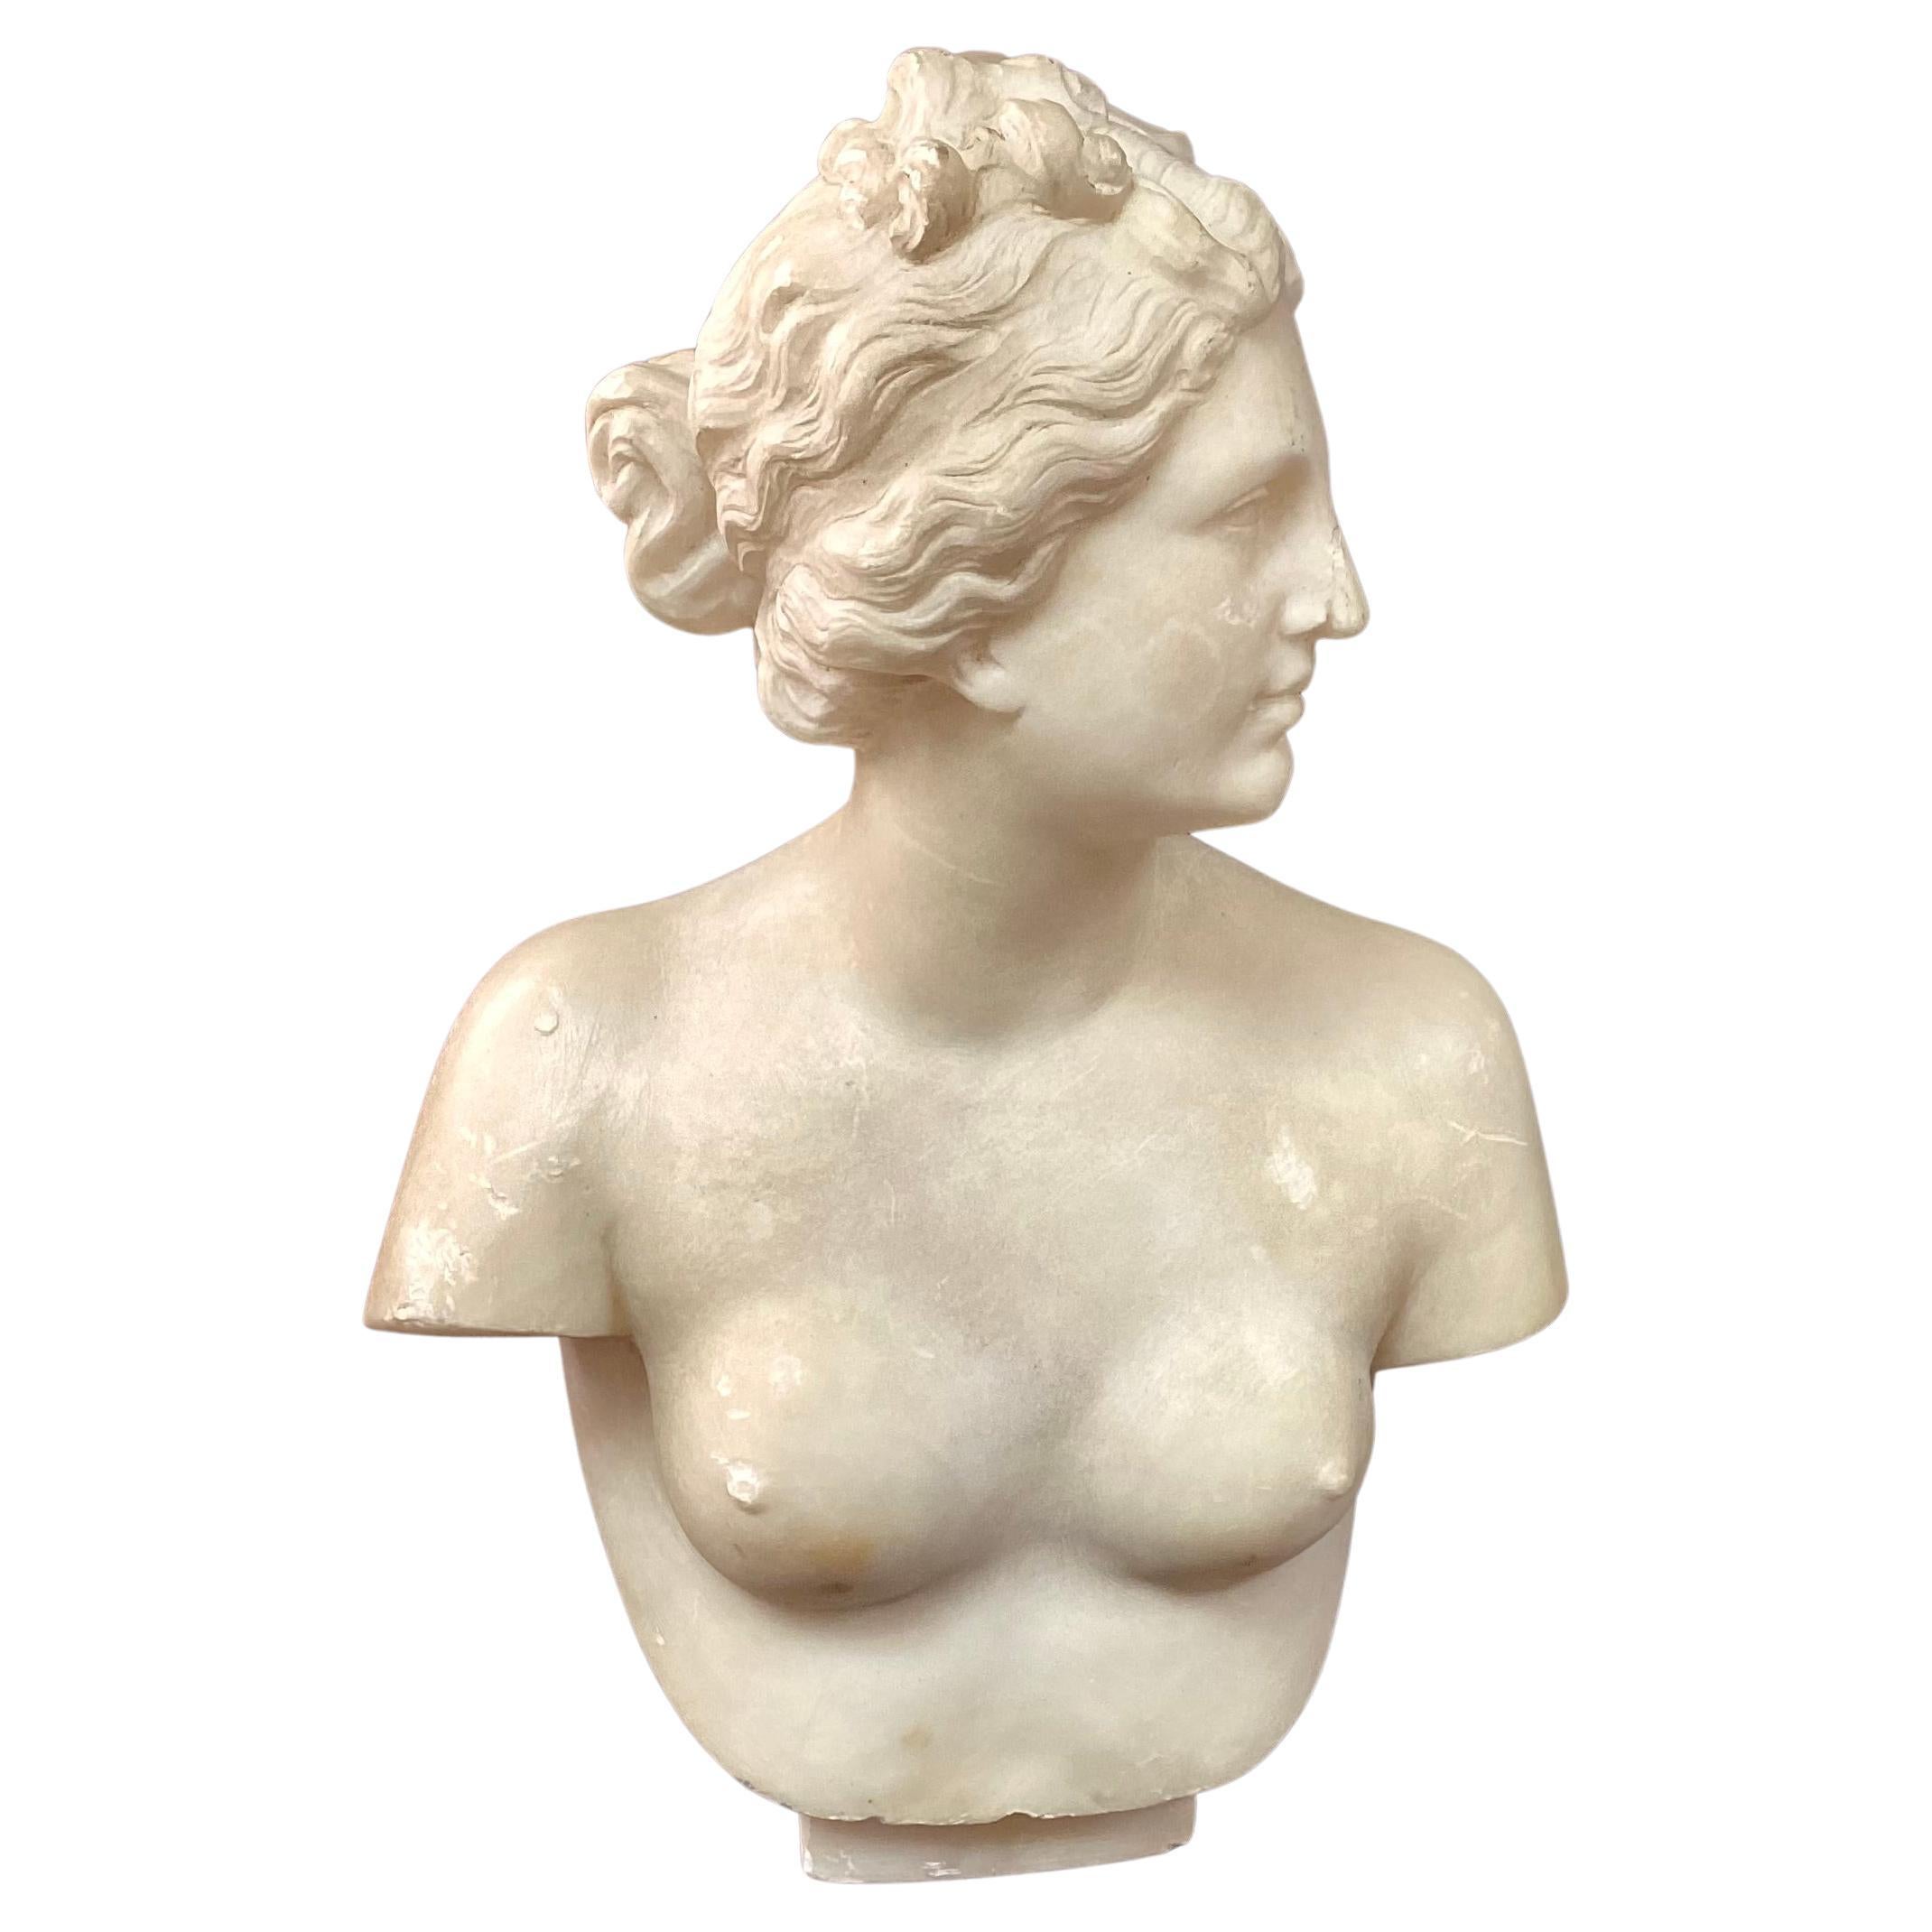 Buste néoclassique italien du 19ème siècle